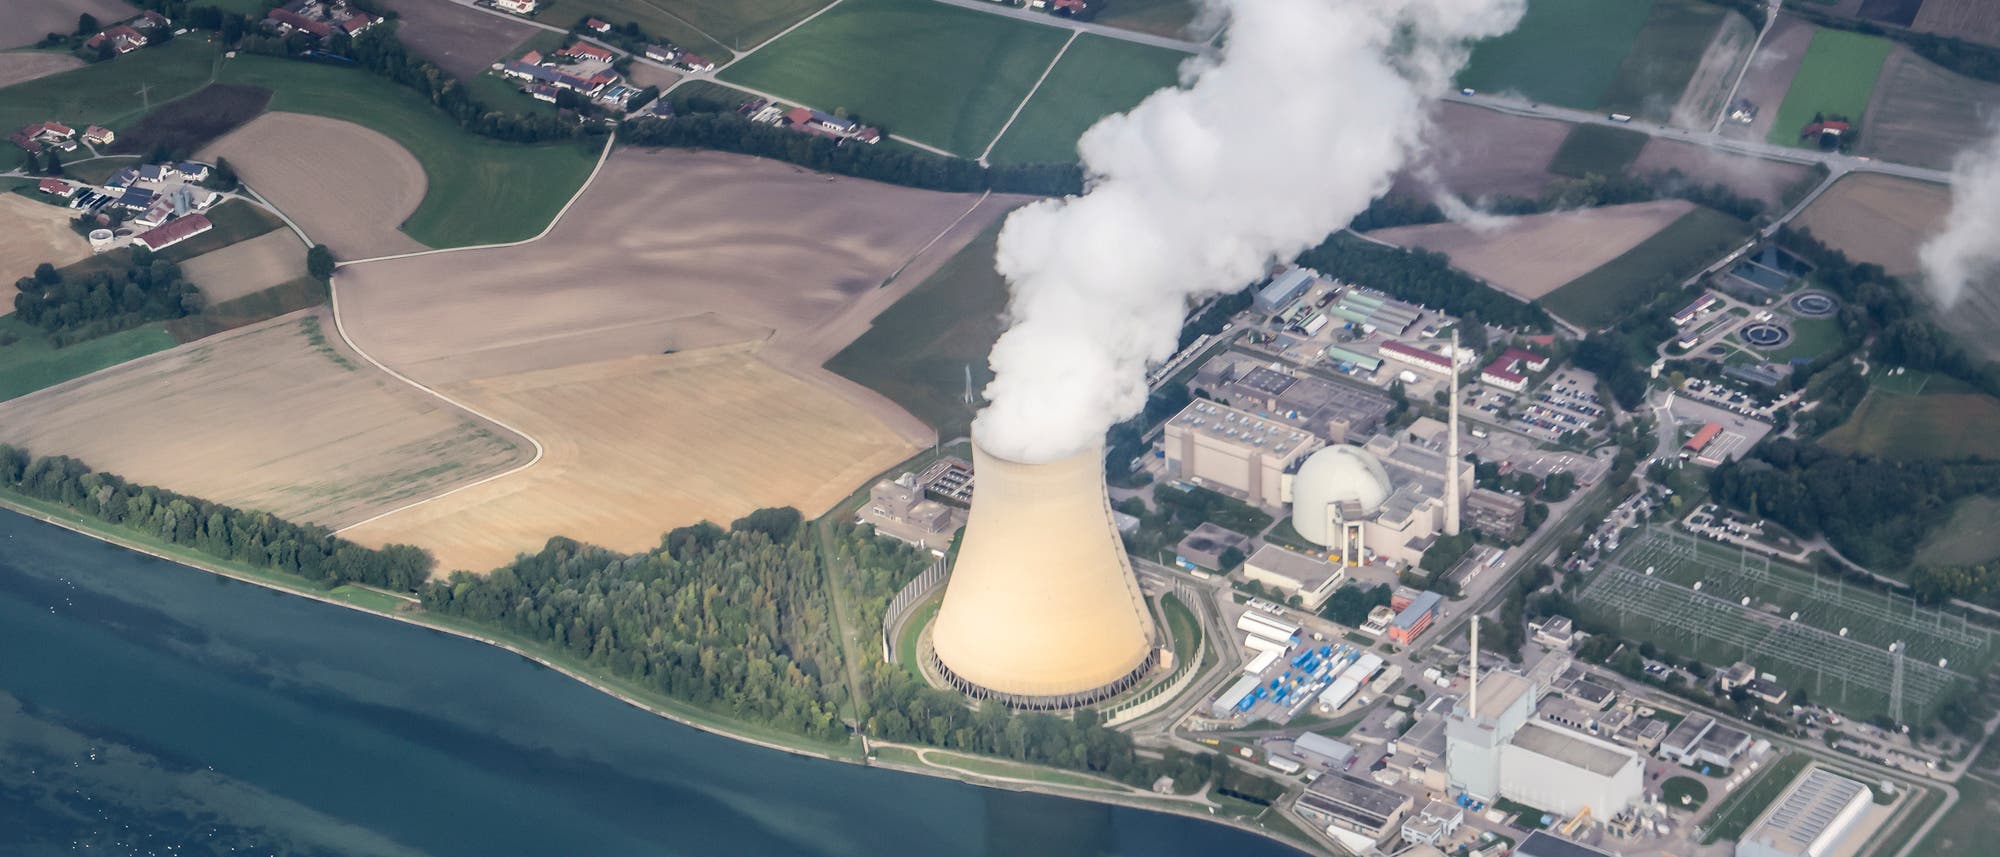 Luftaufnahme des Kernkraftwerks Isar-2. Aus dem Kühlturm quillt Dampf. 